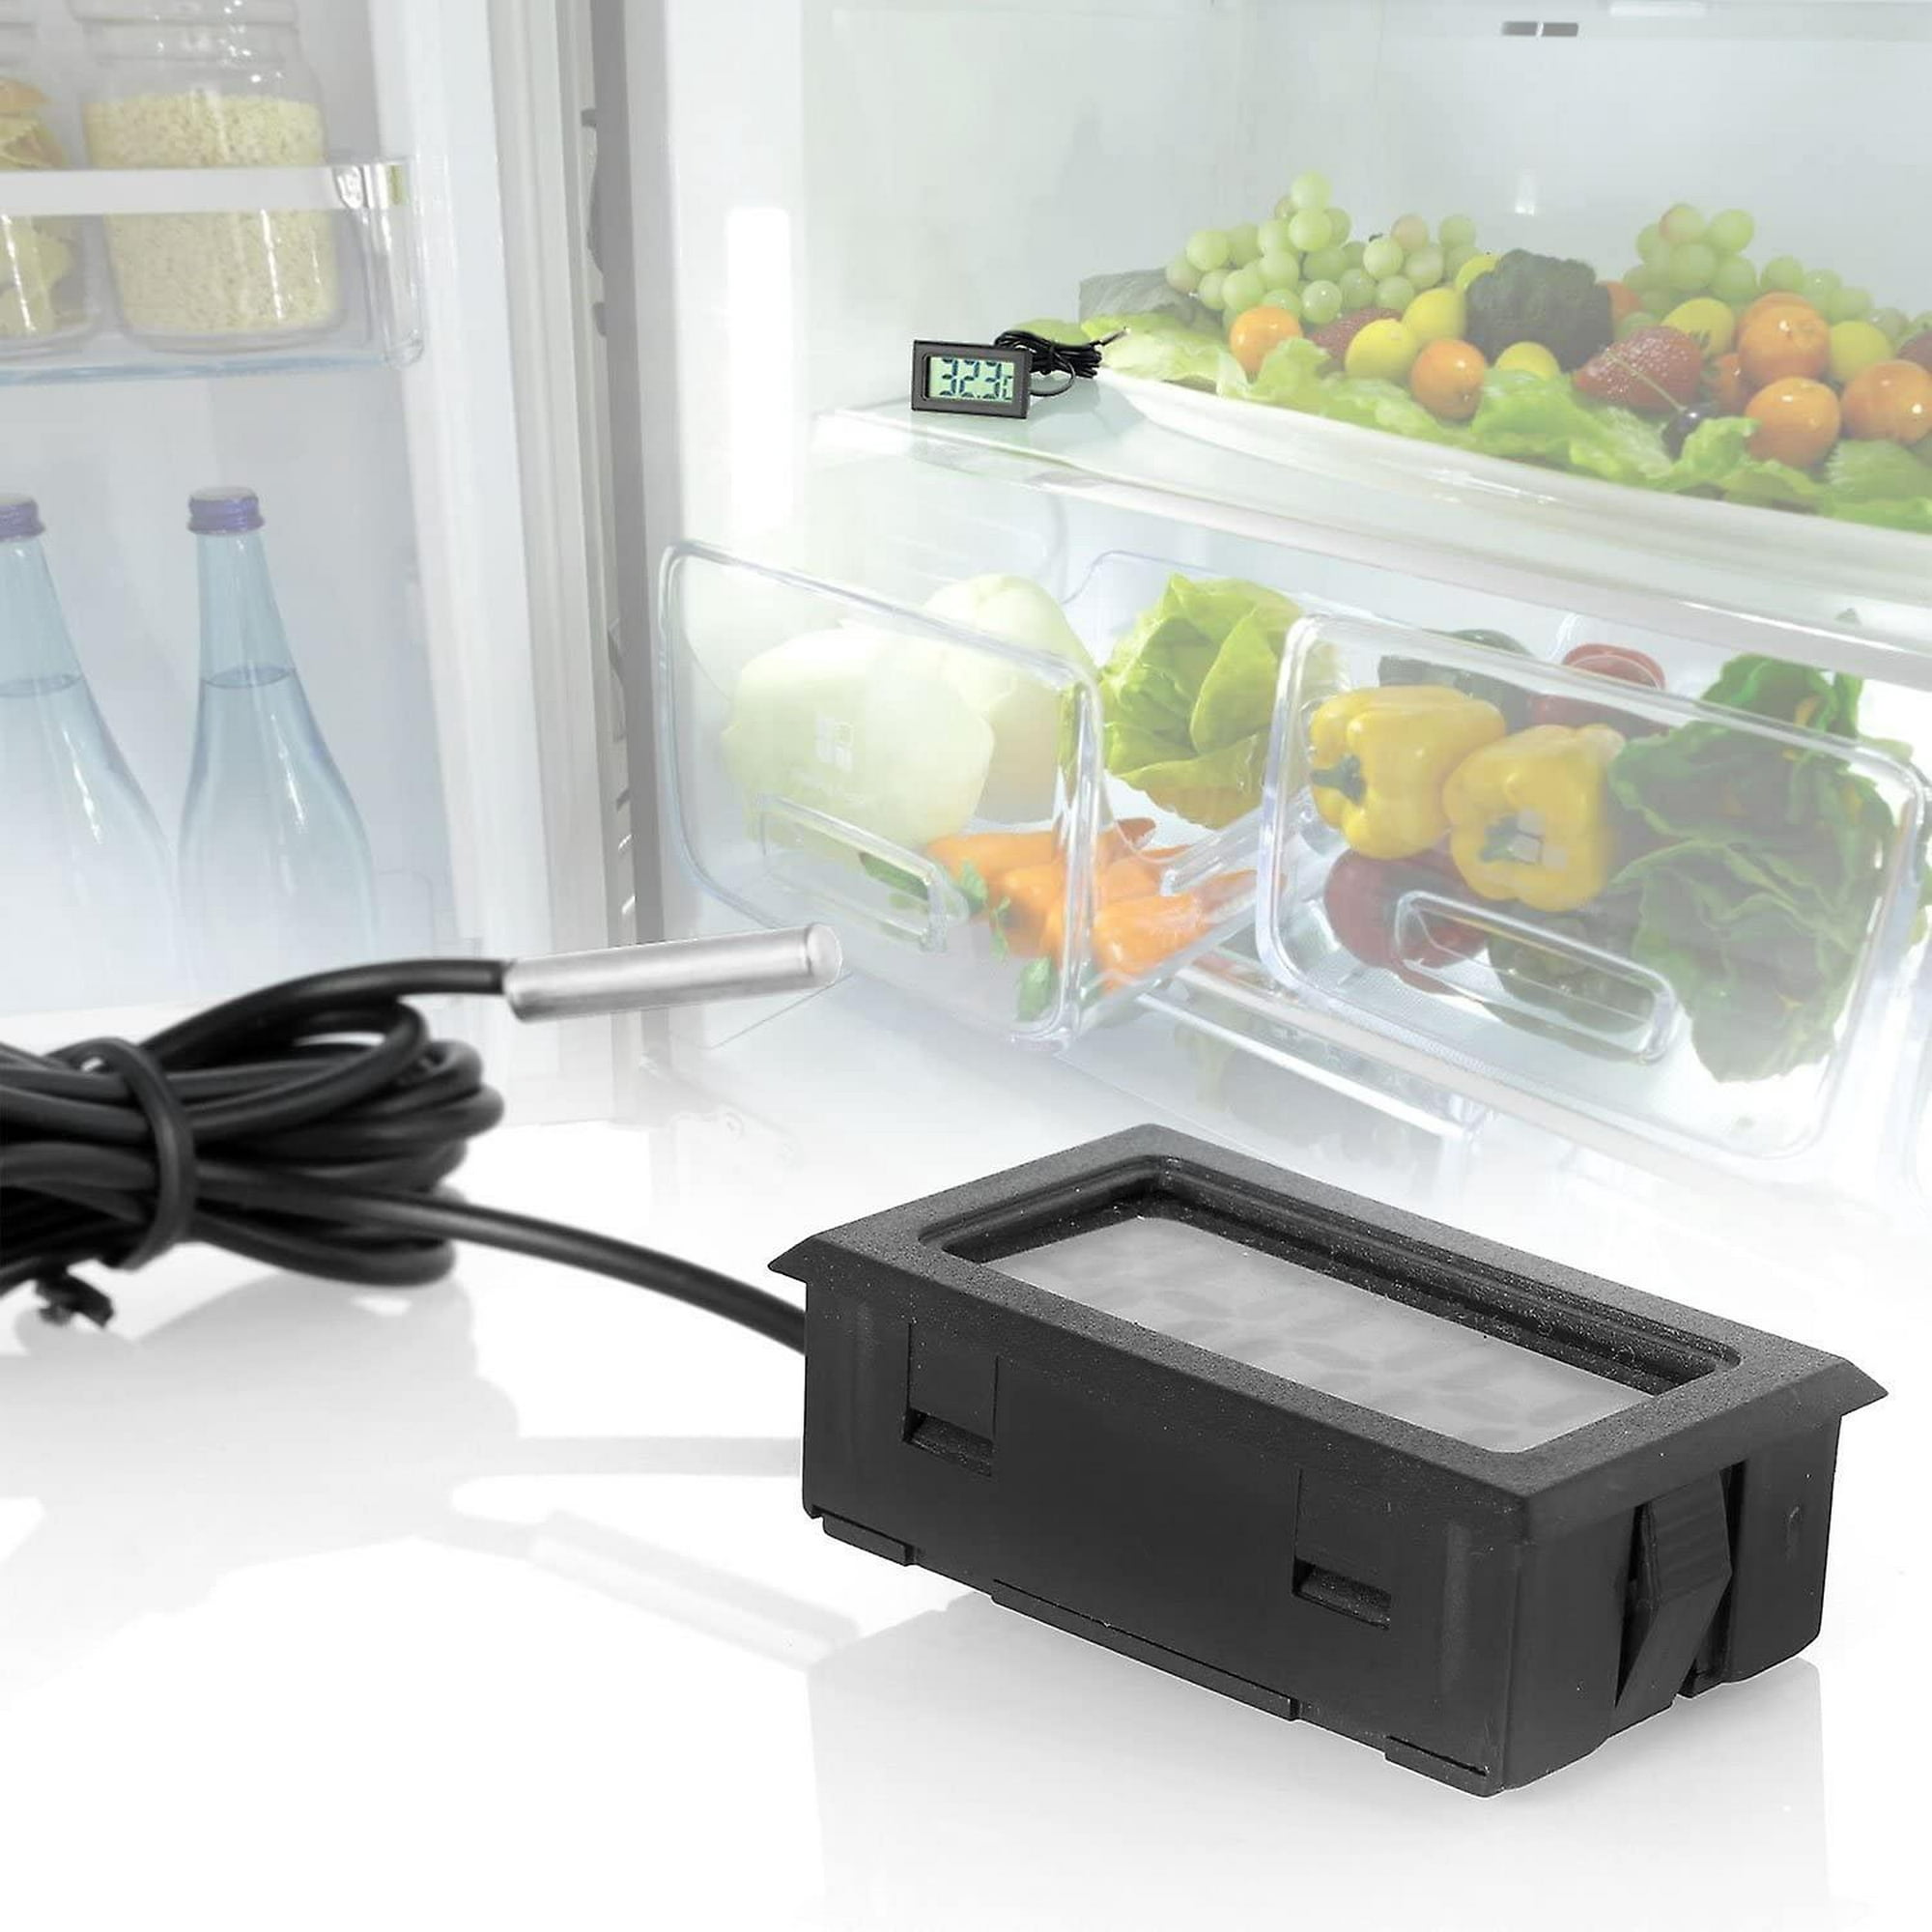 Termómetro digital con sonda para el frigorífico o el congelador